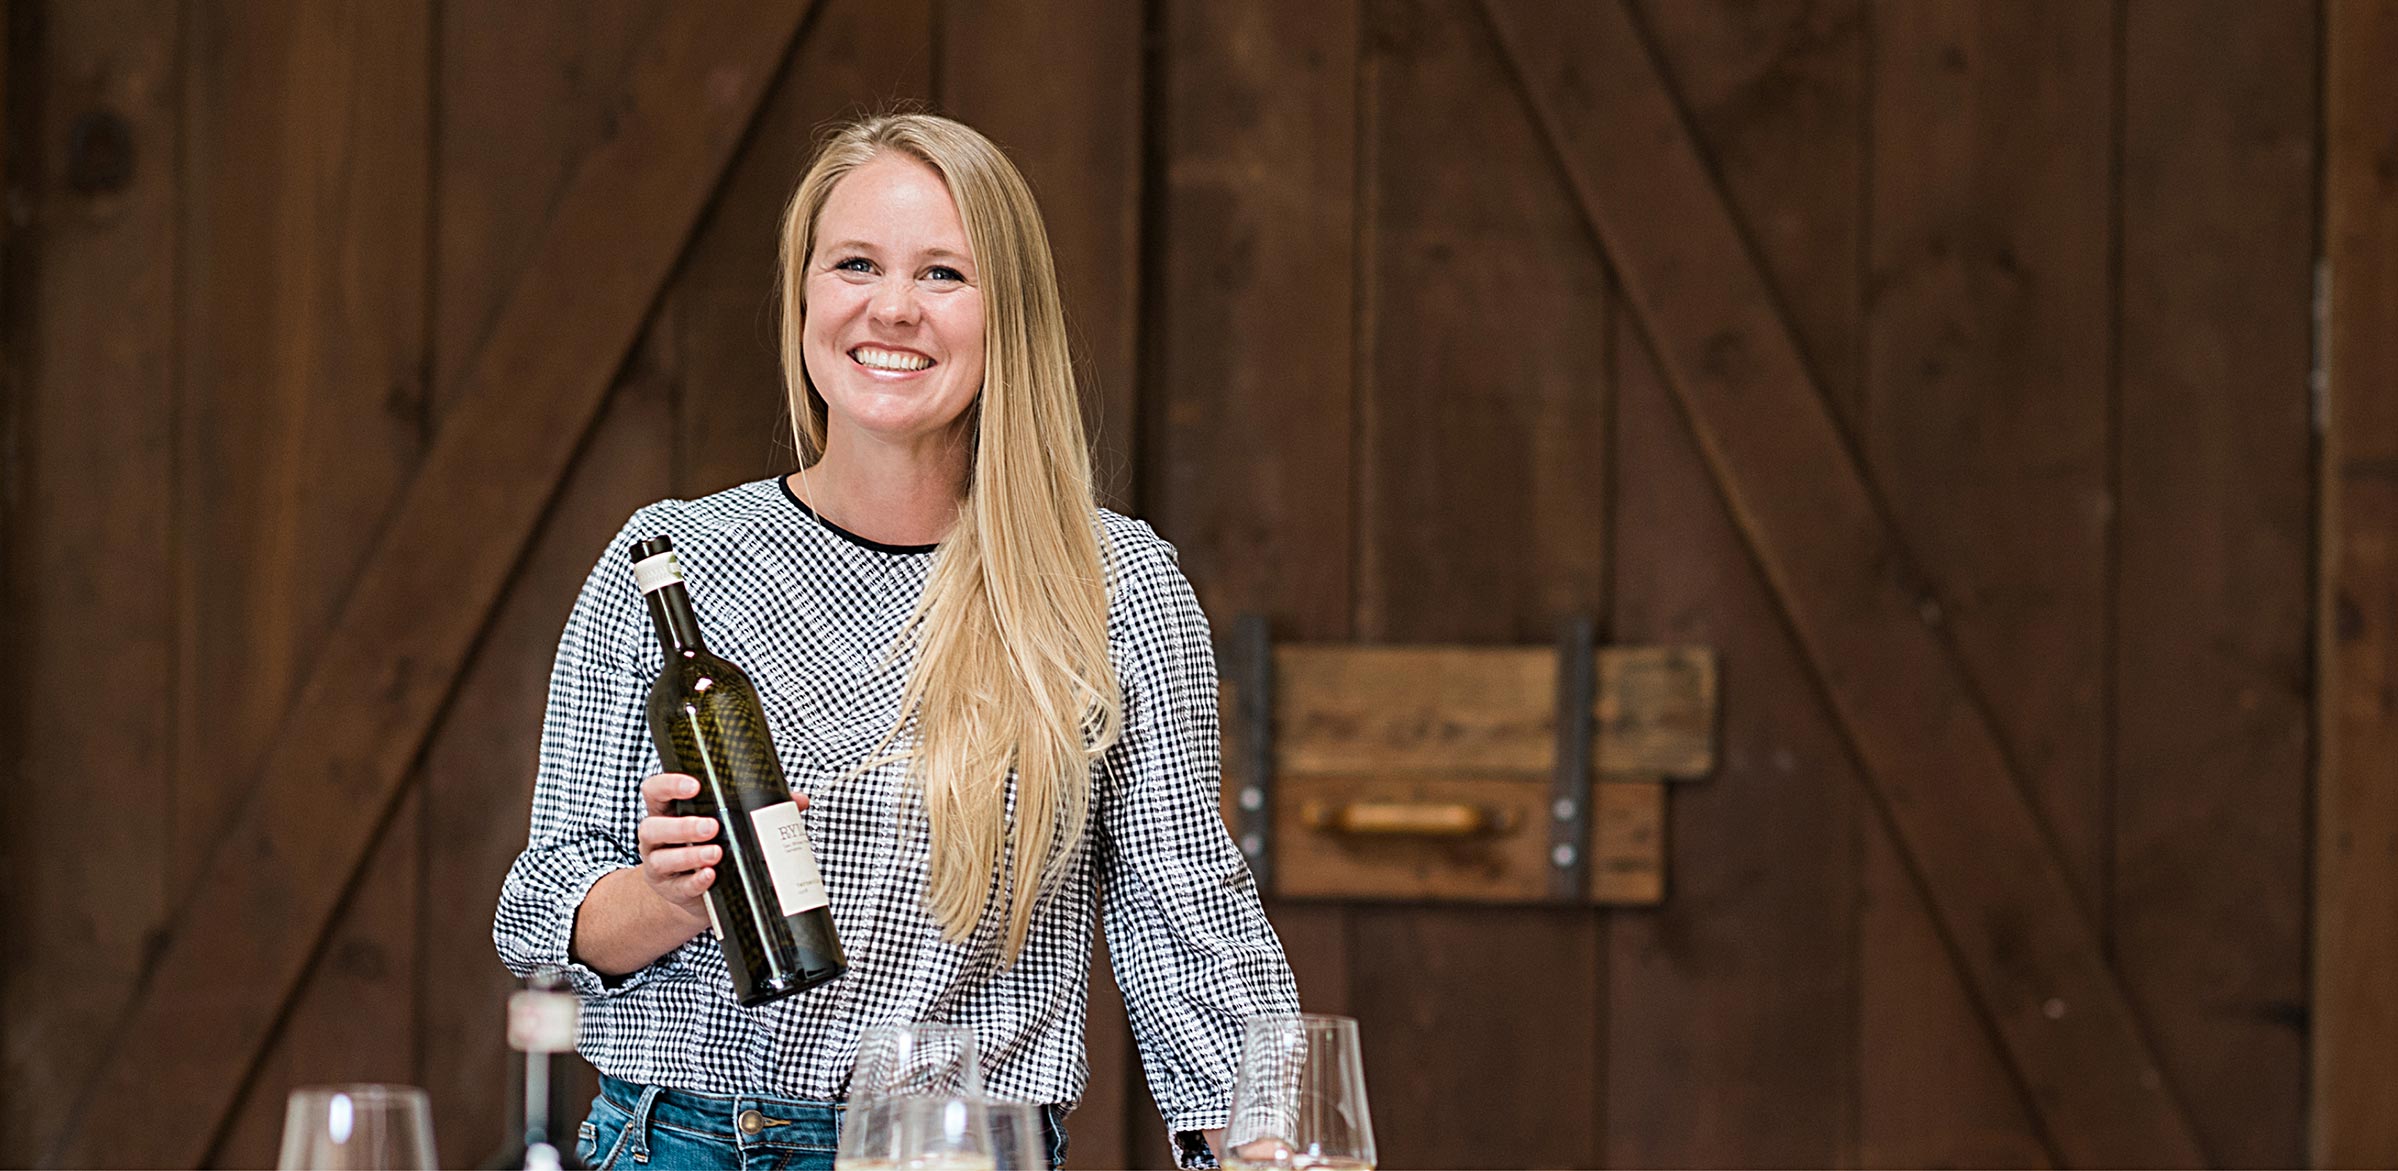 Meet Winemaker: Megan Glaab